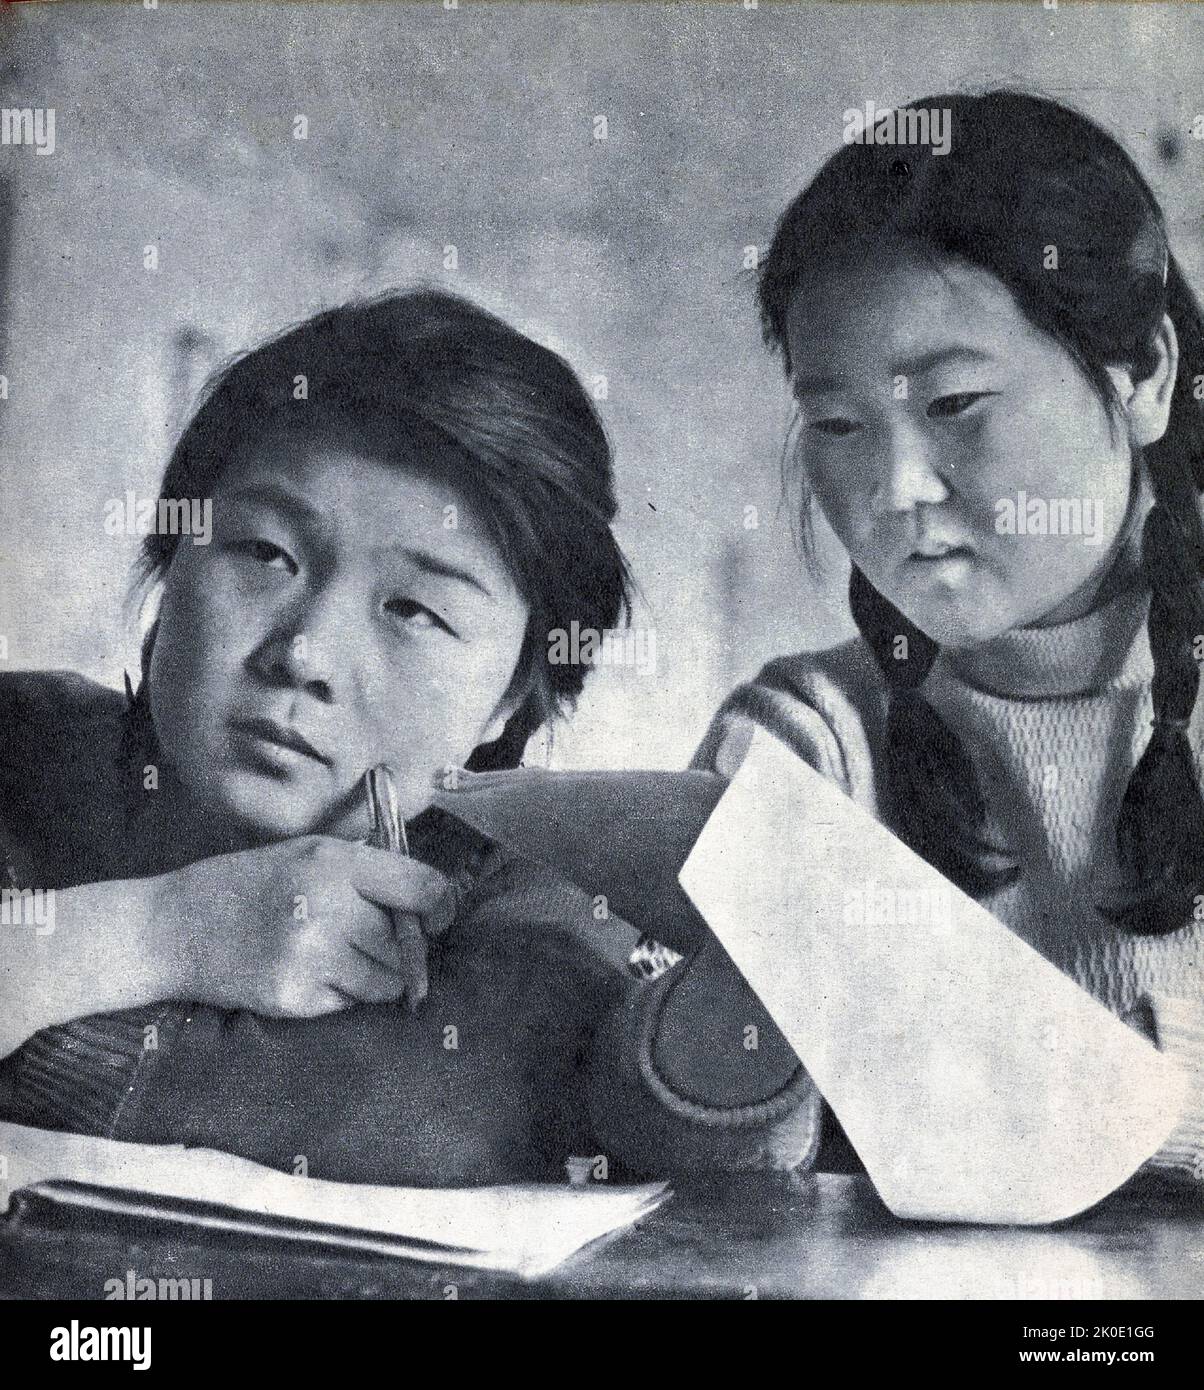 Nordkoreanische Propagandafotos von Universitätsstudenten, die zum Wohle des Staates lernen, und einem Industriearbeiter, der mit harter Arbeit zum Wohle des Staates zufrieden ist, 1964. Stockfoto